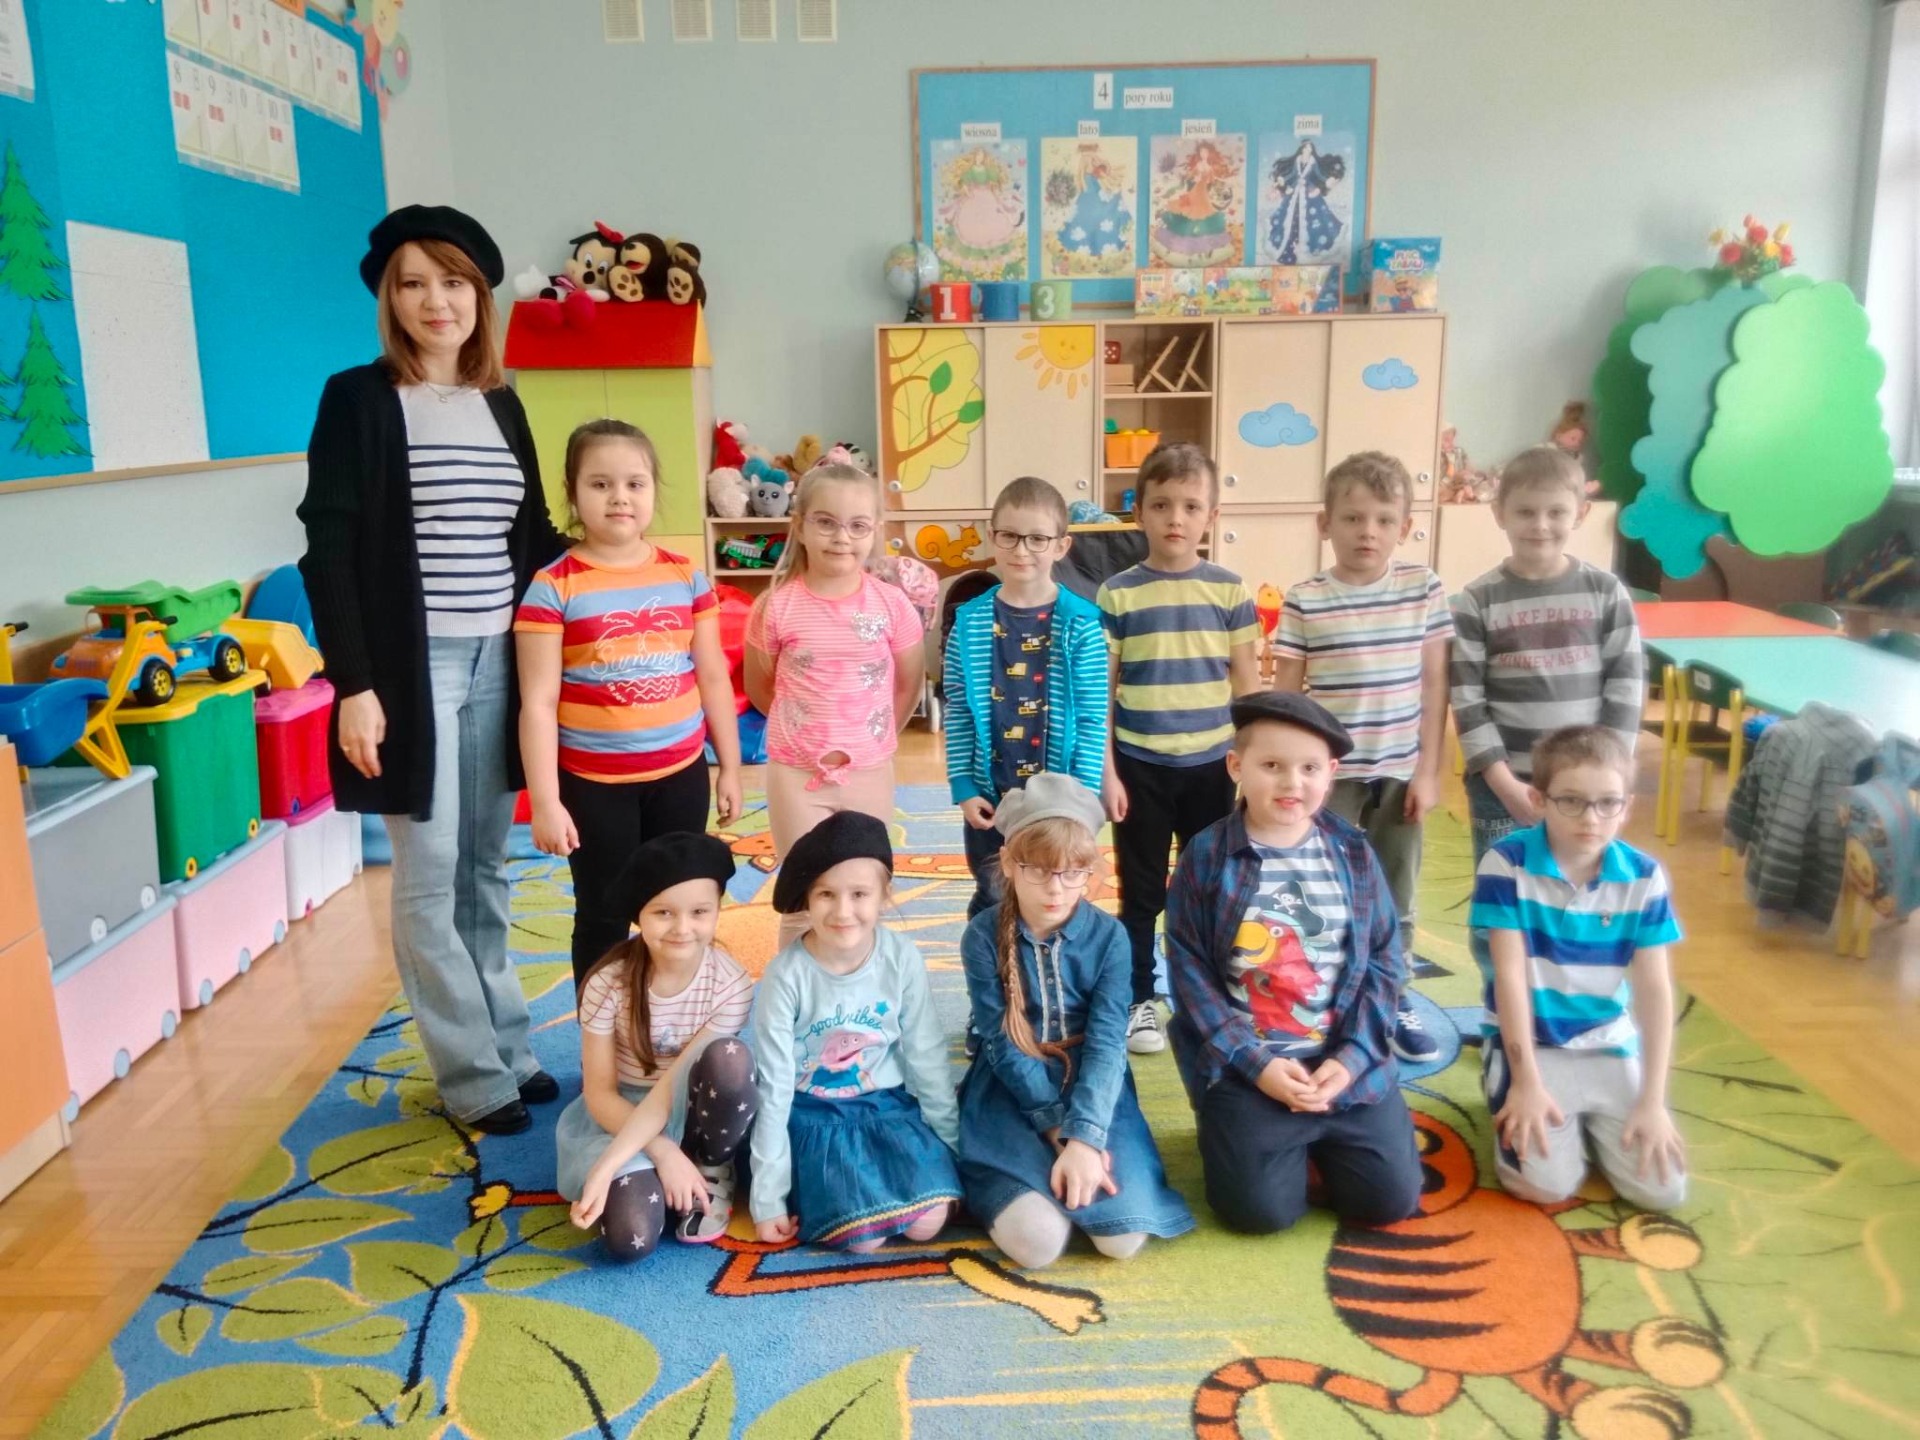 Piąte zdjęcie przedstawia nauczycielkę  i jedenastu uczniów klasy zero b, pięć dziewczynek i sześciu chłopców. Na pierwszym planie na kolorowym dywanie siedzi trzy dziewczynki i dwóch chłopców. Za nimi stoi nauczycielka, dwie dziewczynki i czterech chłopców. W tle kolorowe mebelki, zabawki i gazetki klasowe.